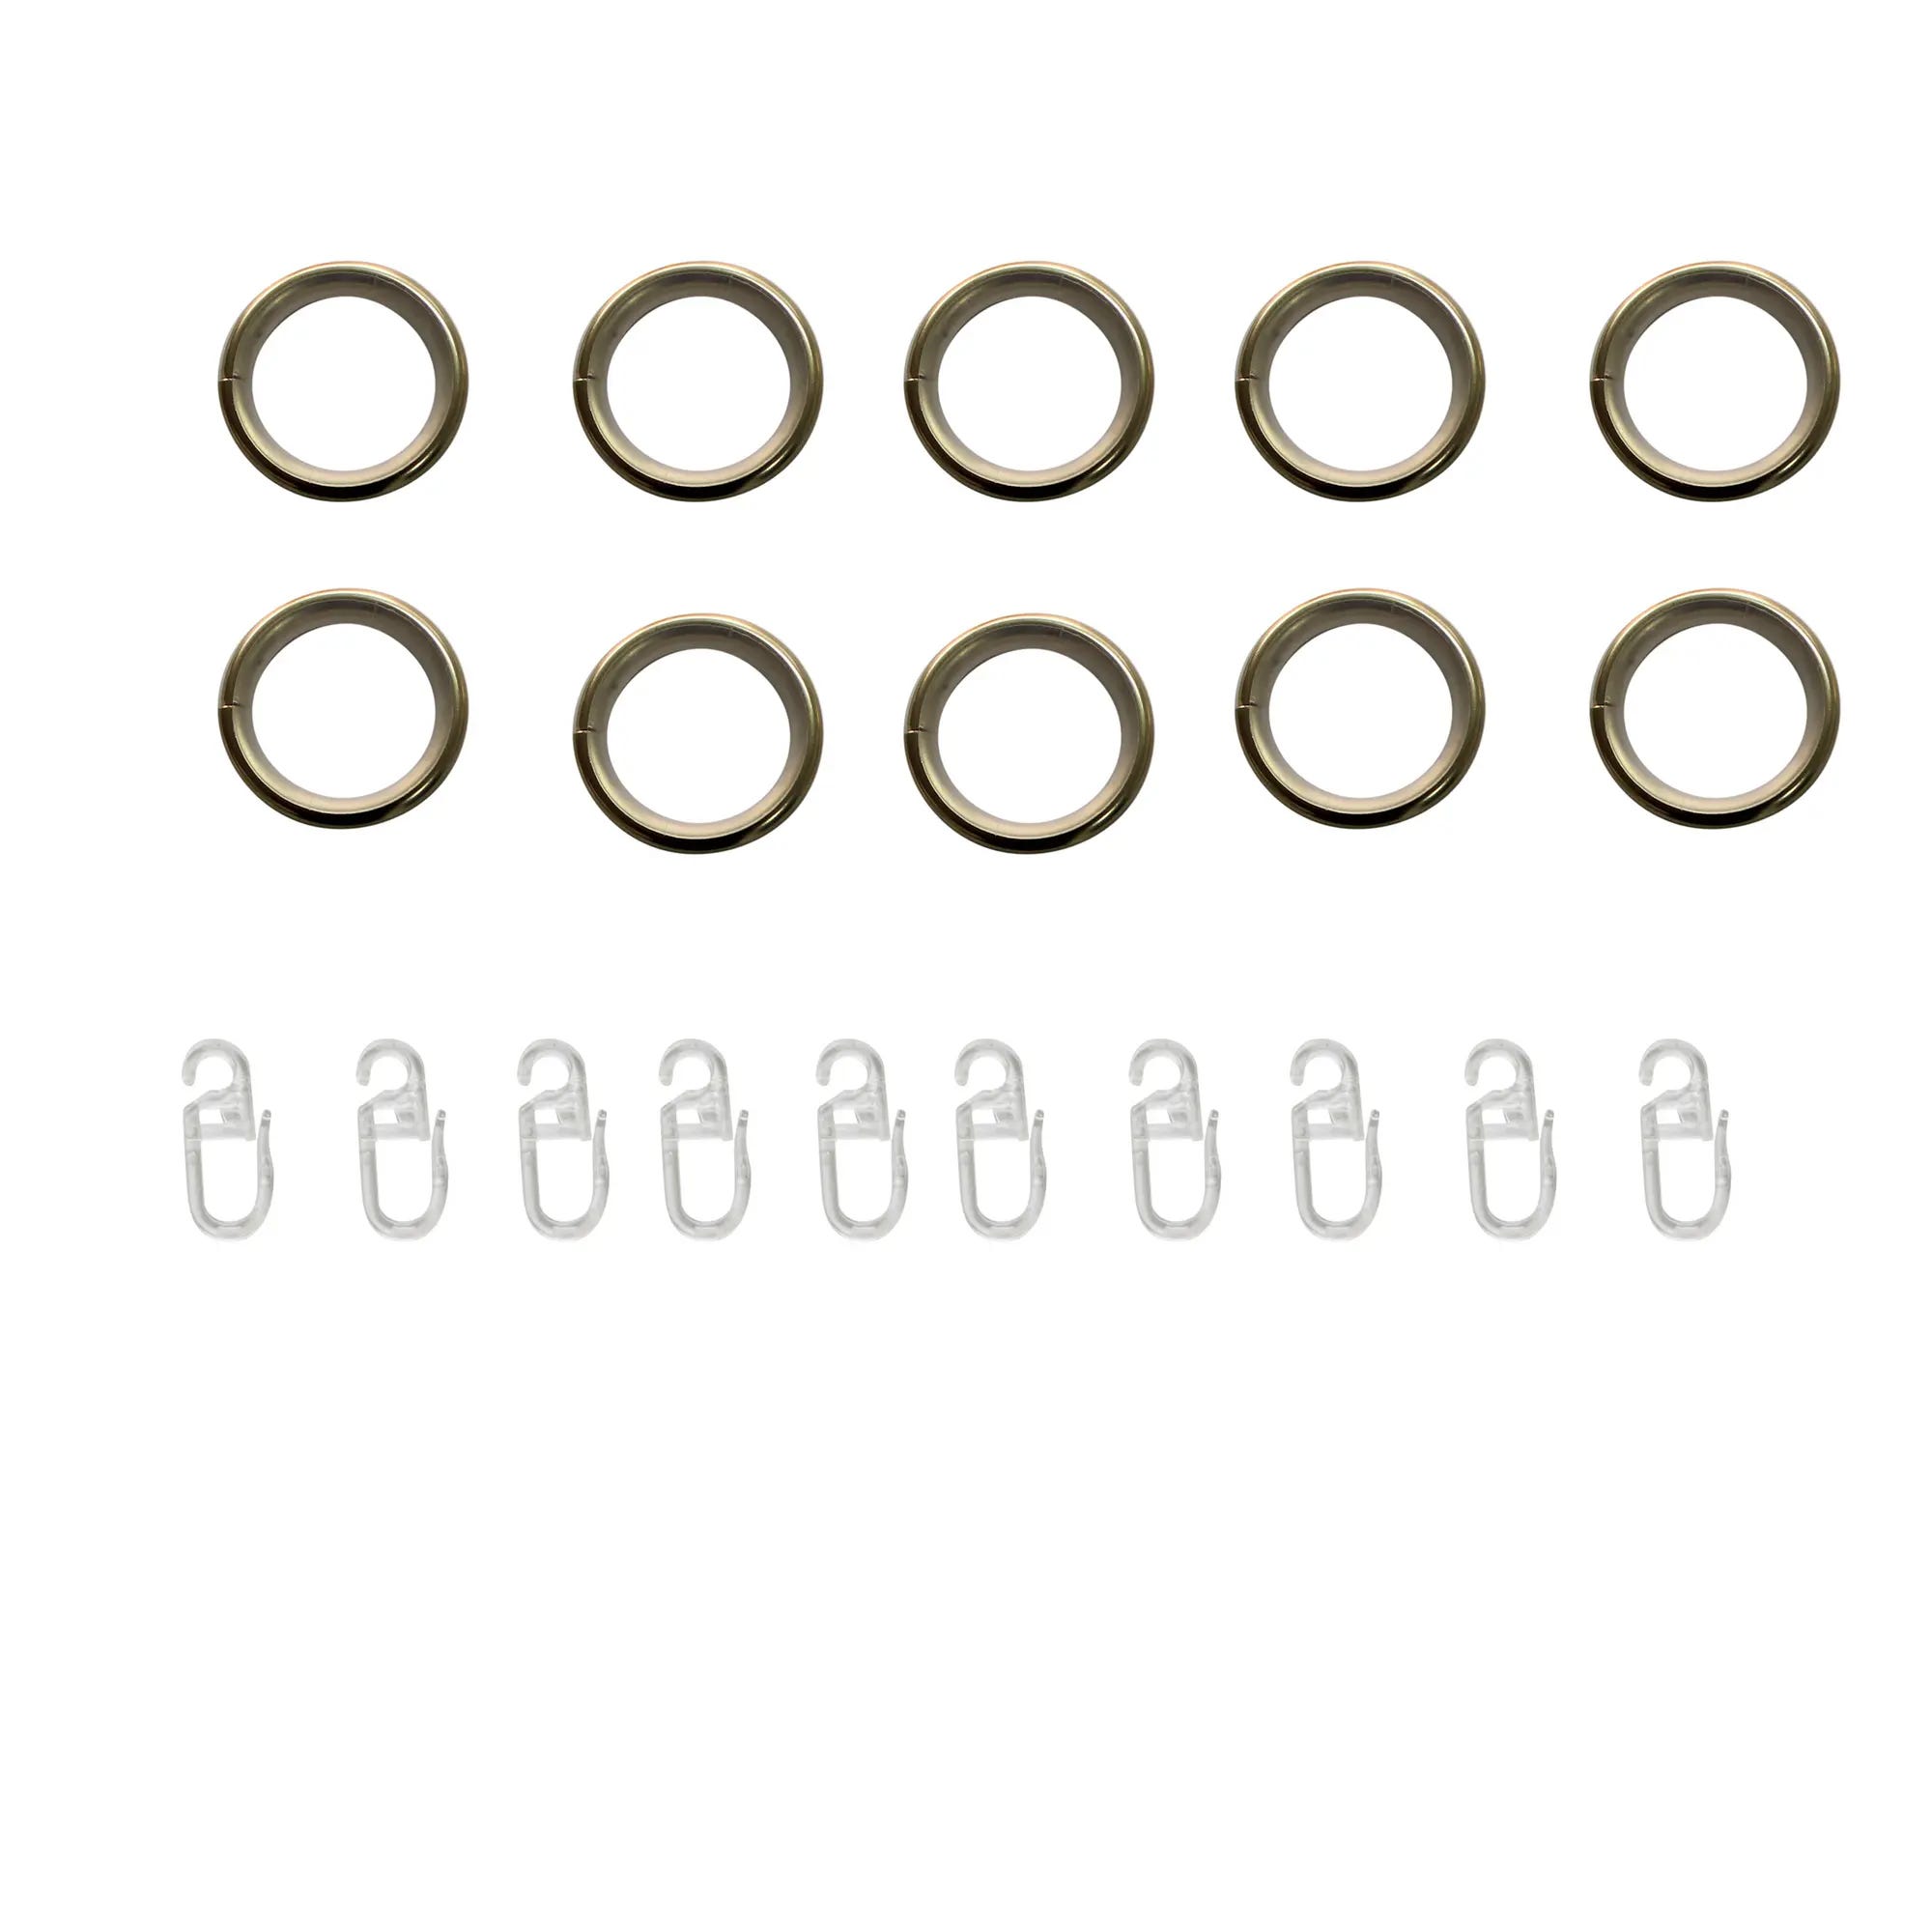 10 anillas para barra de cortina metal con pinza D25 oro INSPIRE